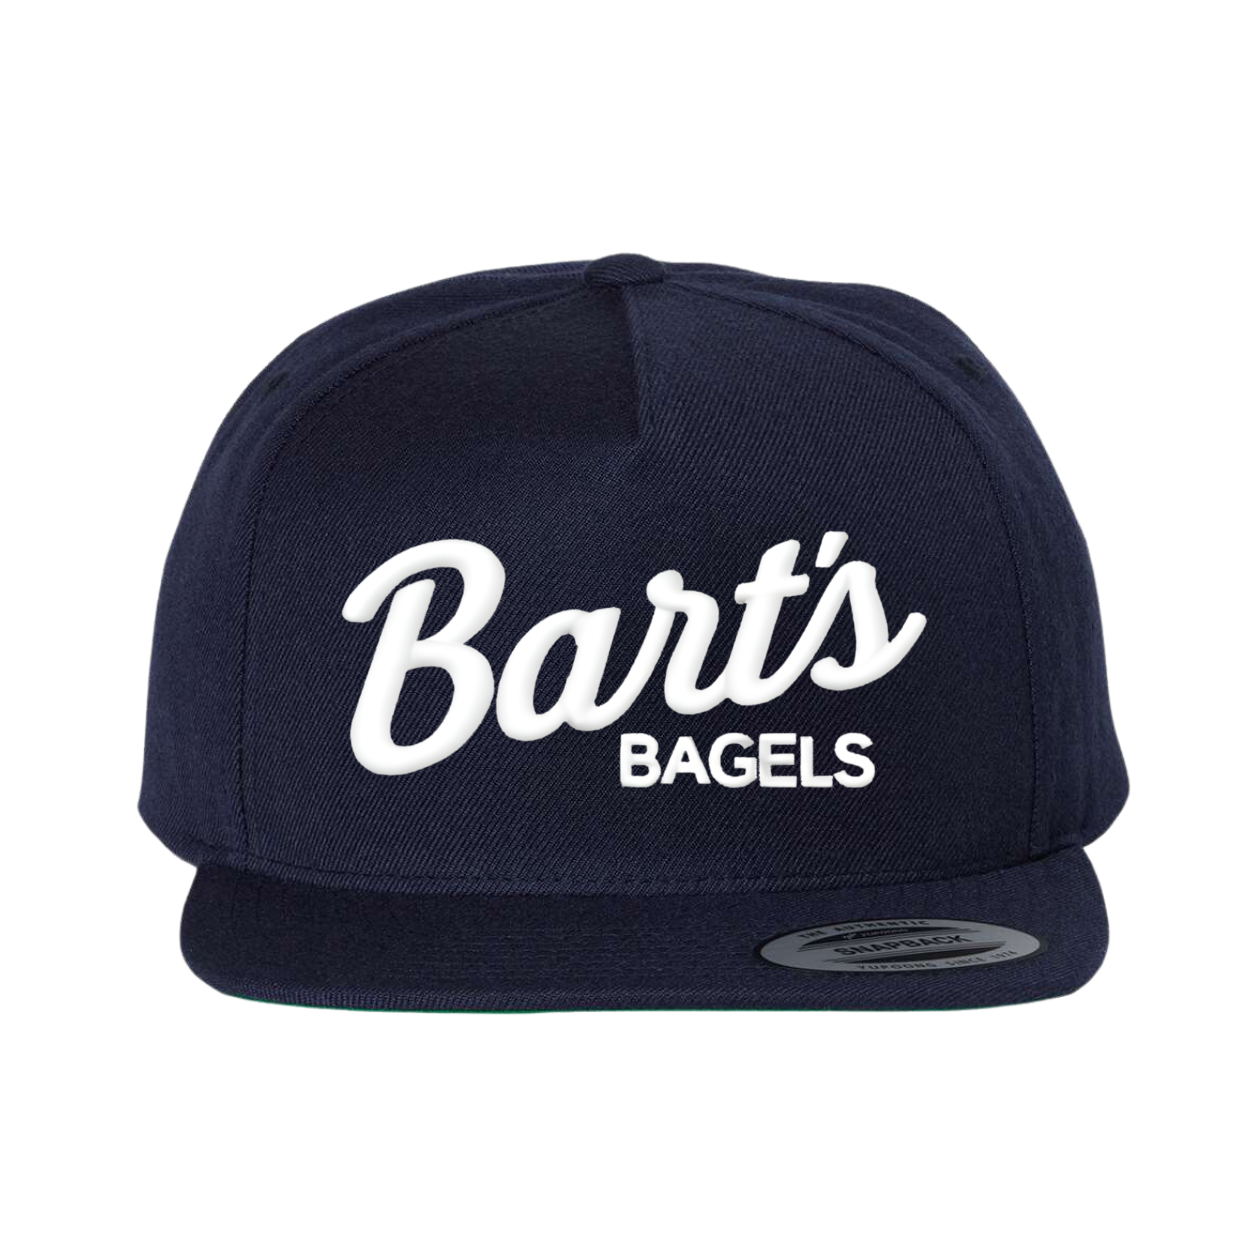 Barts Bagels- Classic Flatbrim Navy Snapback